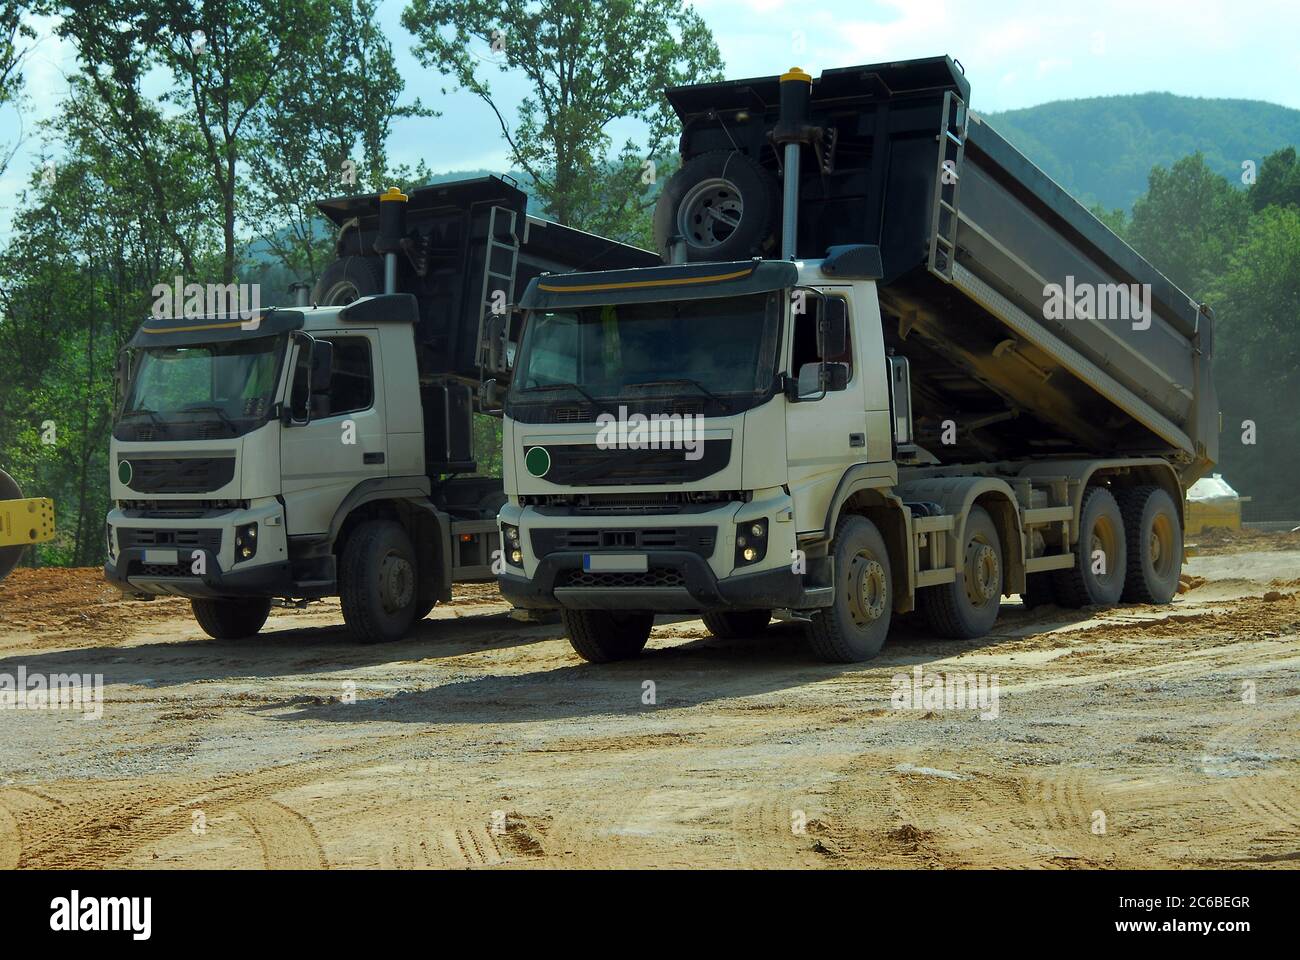 deux grands camions benne basculante en service, deux grands camions benne basculante déchargeant la terre sur le site Banque D'Images